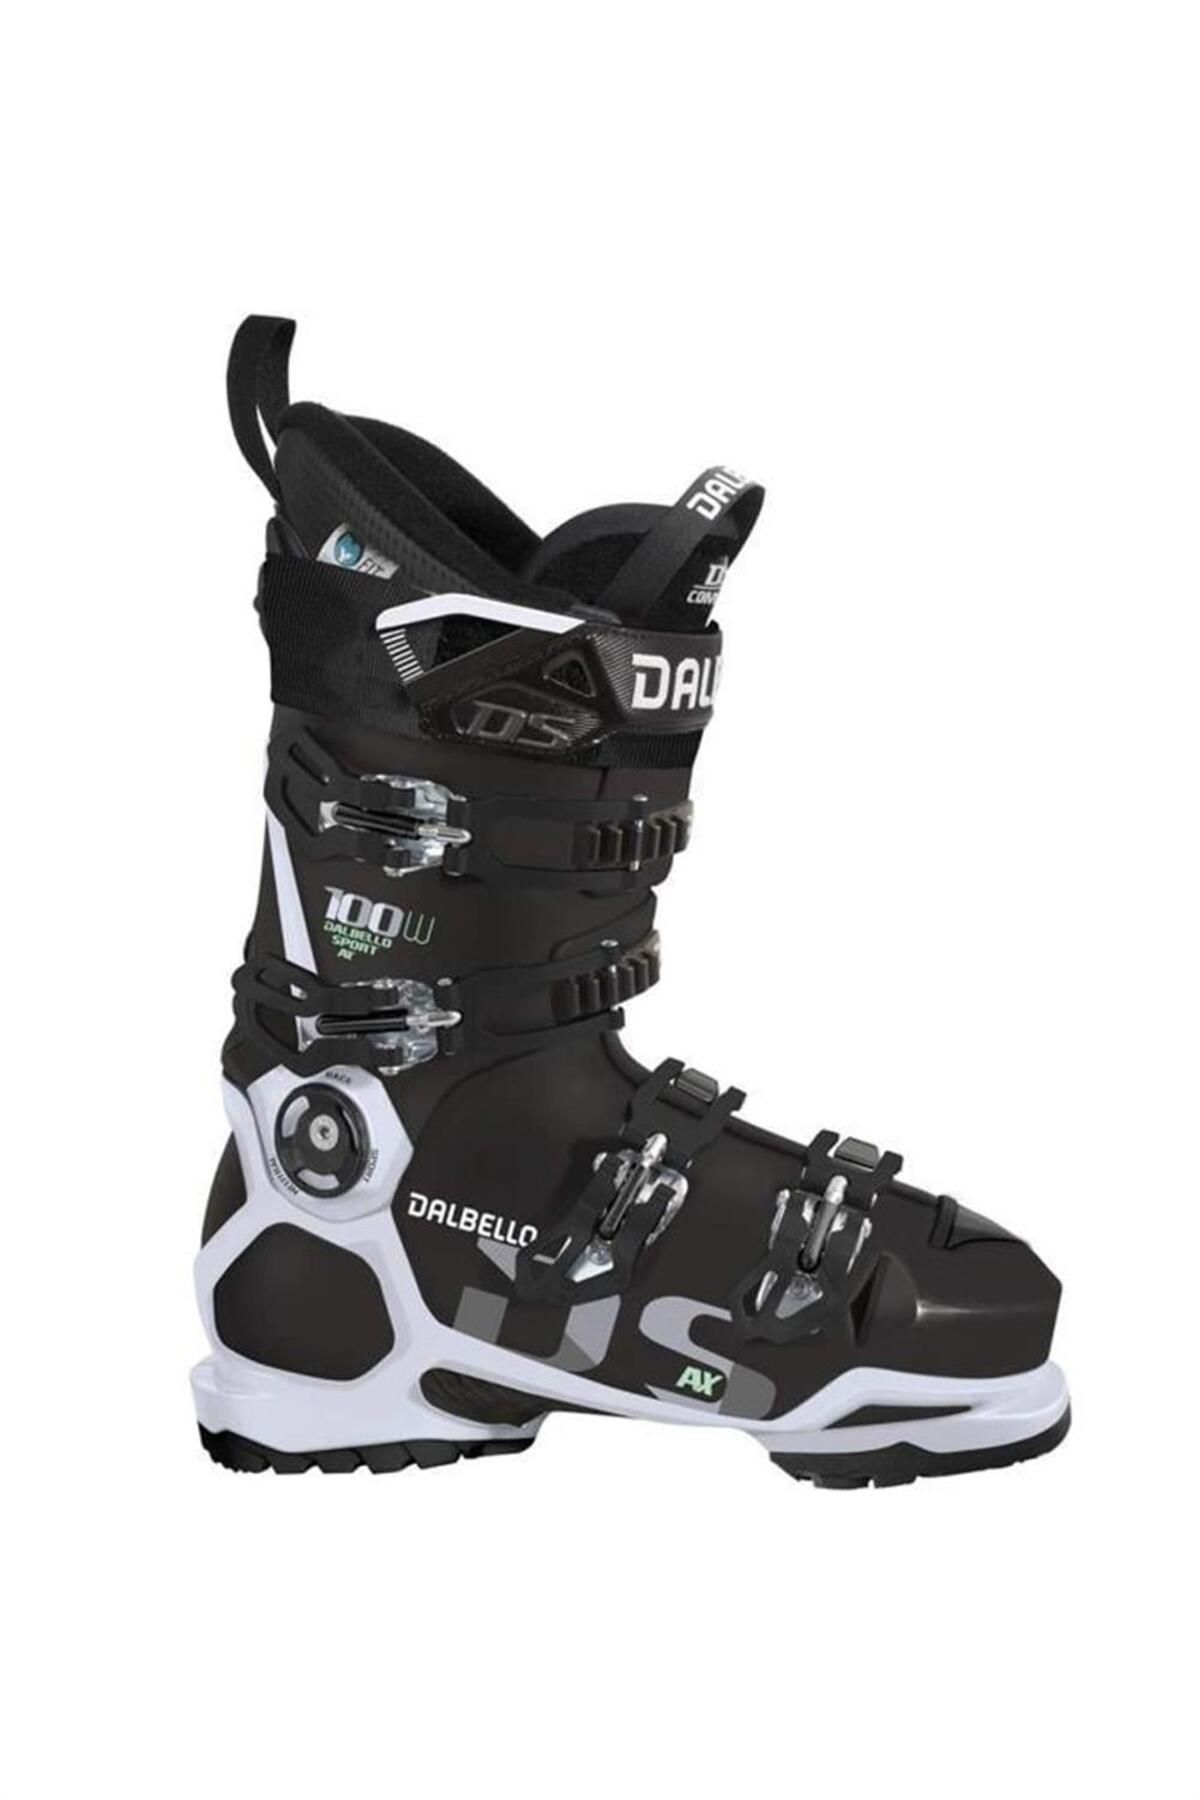 Dalbello Ds Ax 100 Ls Kadın Kayak Ayakkabısı Siyah / Beyaz